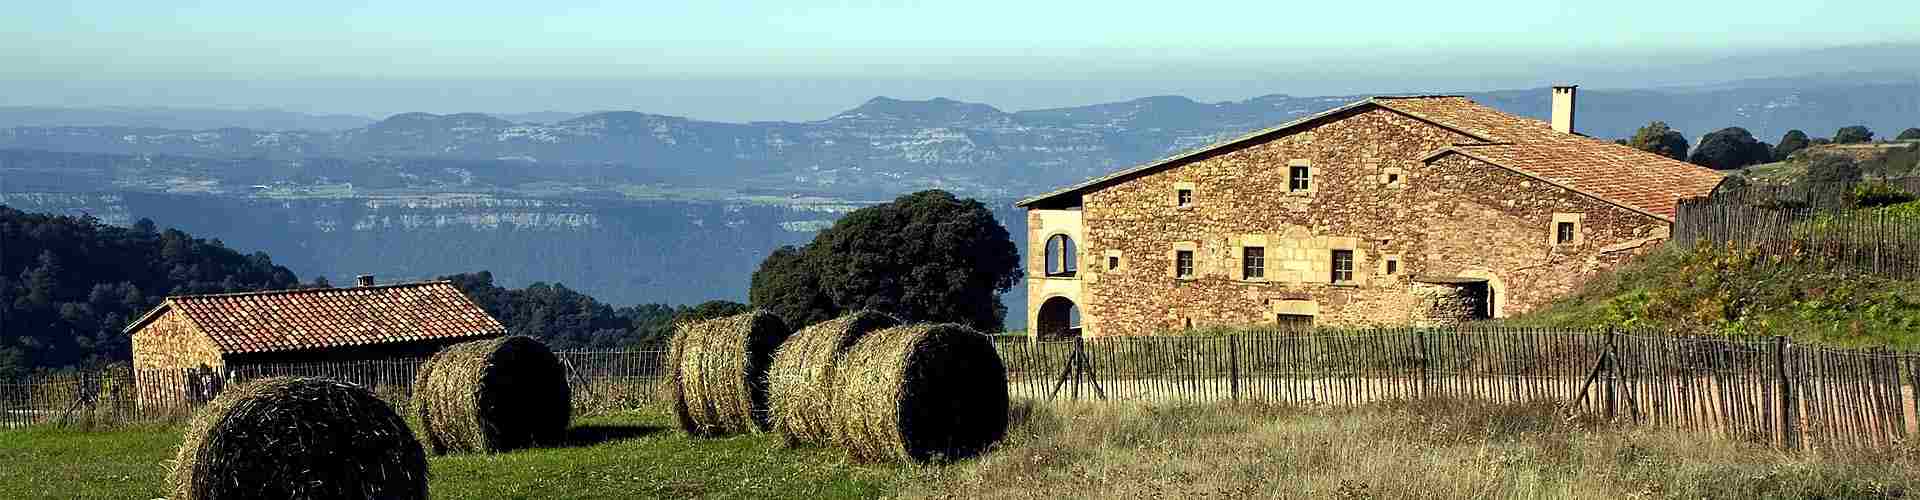 Casas rurales en Alicante
           
           


          
          
          

